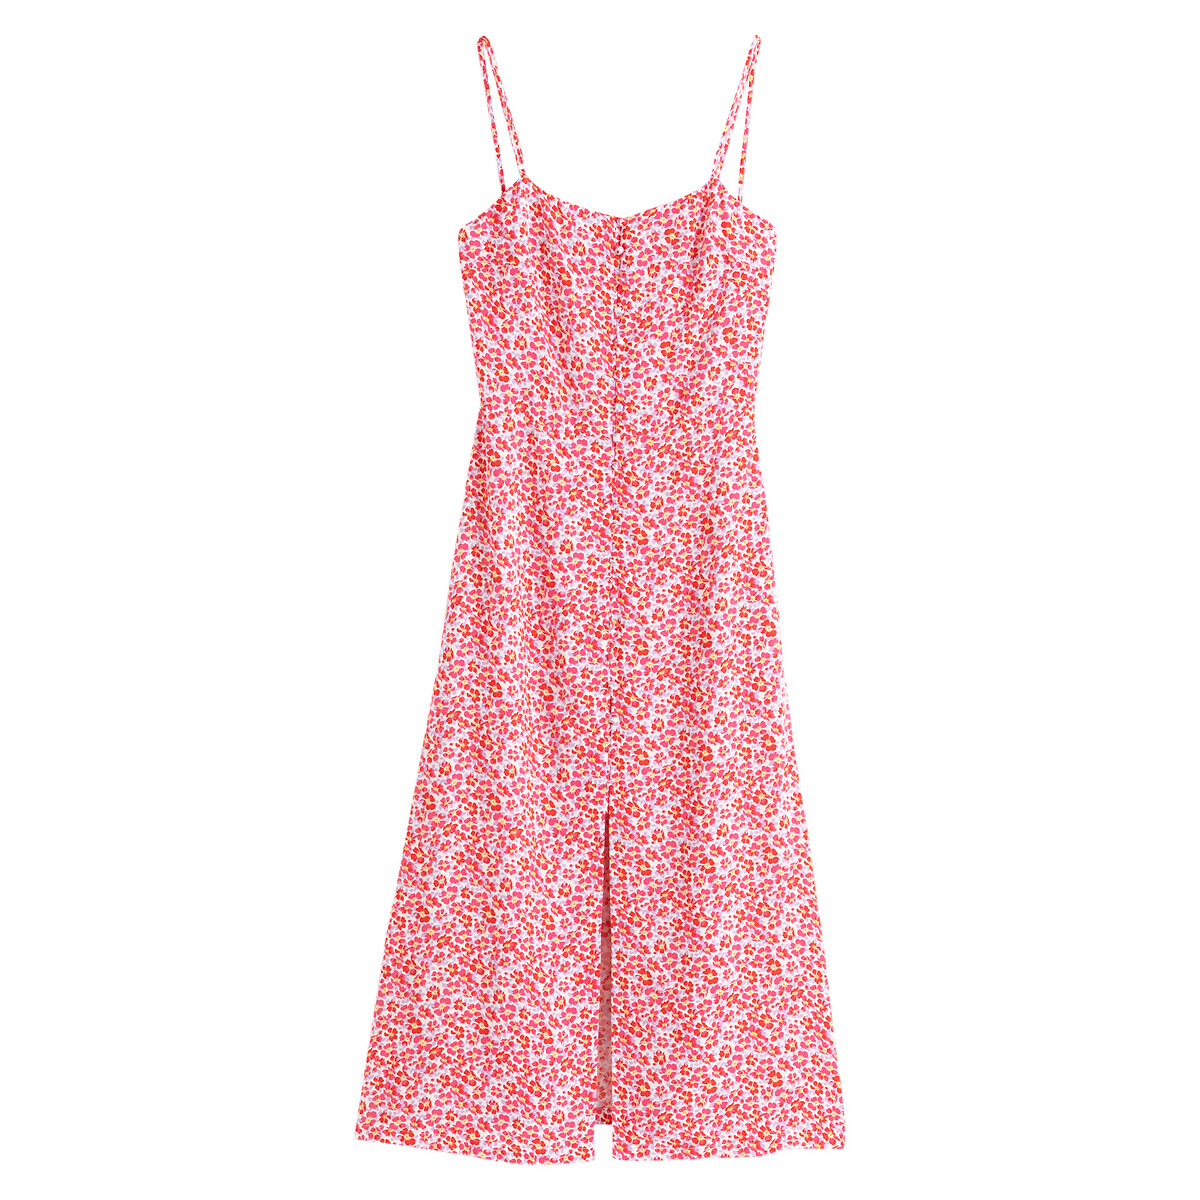 Платье LaRedoute Длинное прямое  с цветочным принтом 40 (FR) - 46 (RUS) розовый, размер 40 (FR) - 46 (RUS) Длинное прямое  с цветочным принтом 40 (FR) - 46 (RUS) розовый - фото 5